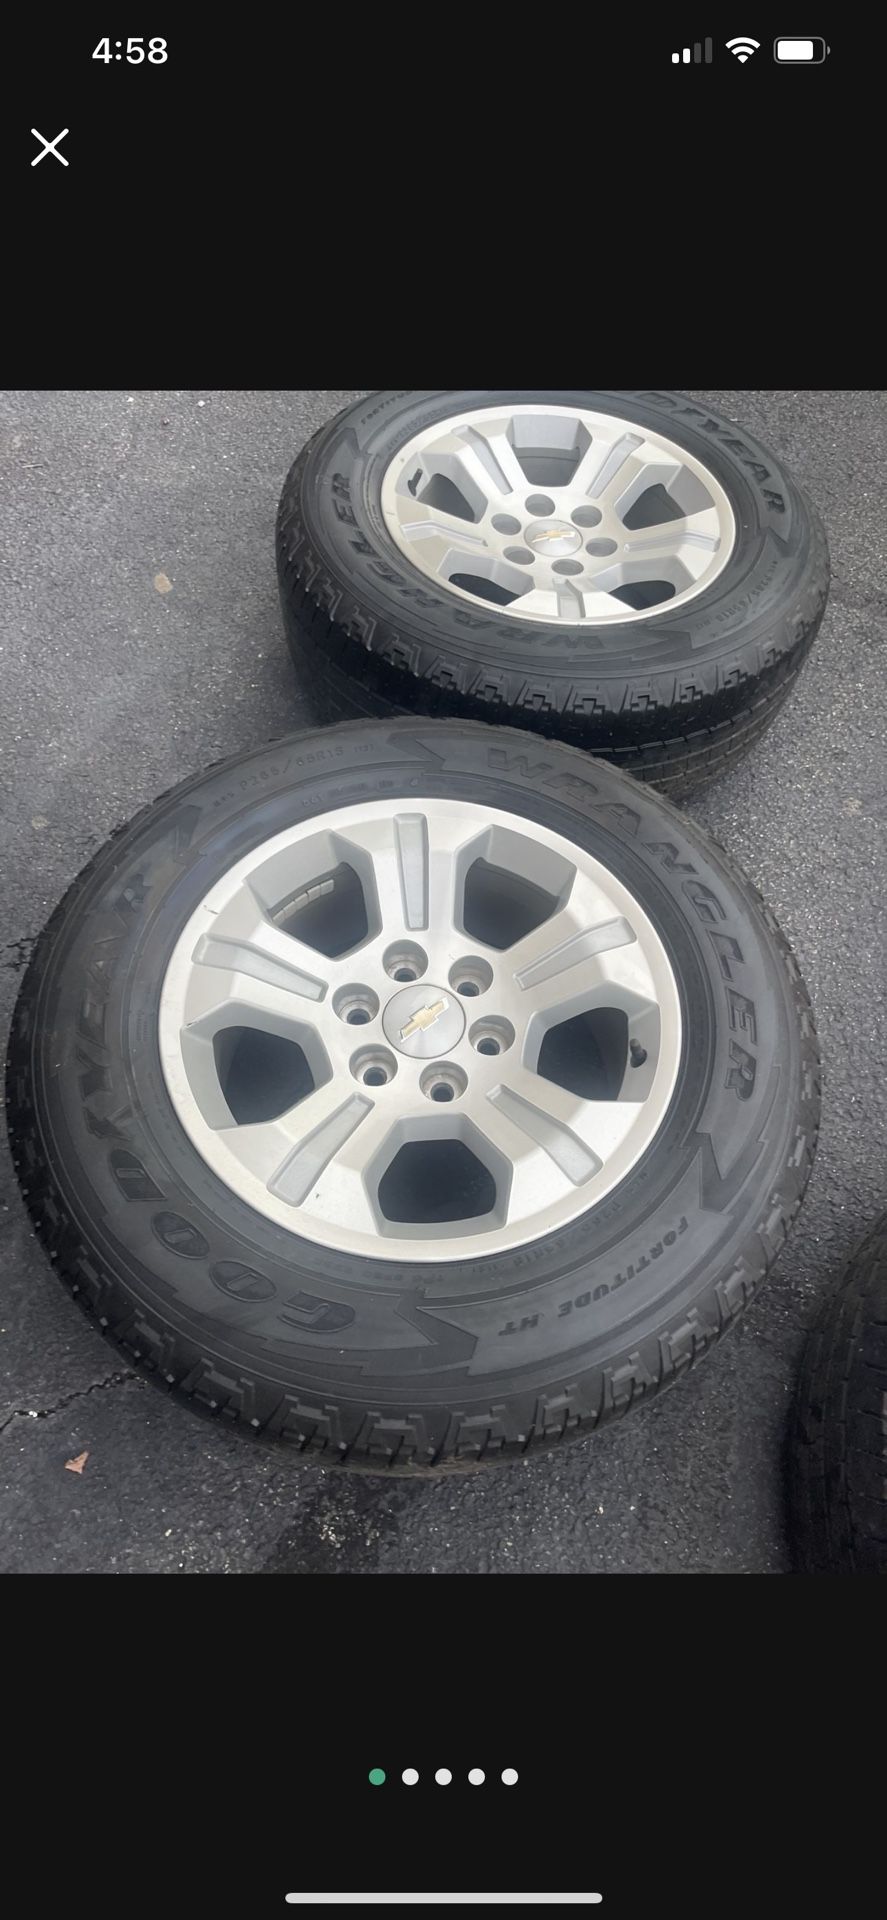 2018 Silverado Wheels 6x139.7 